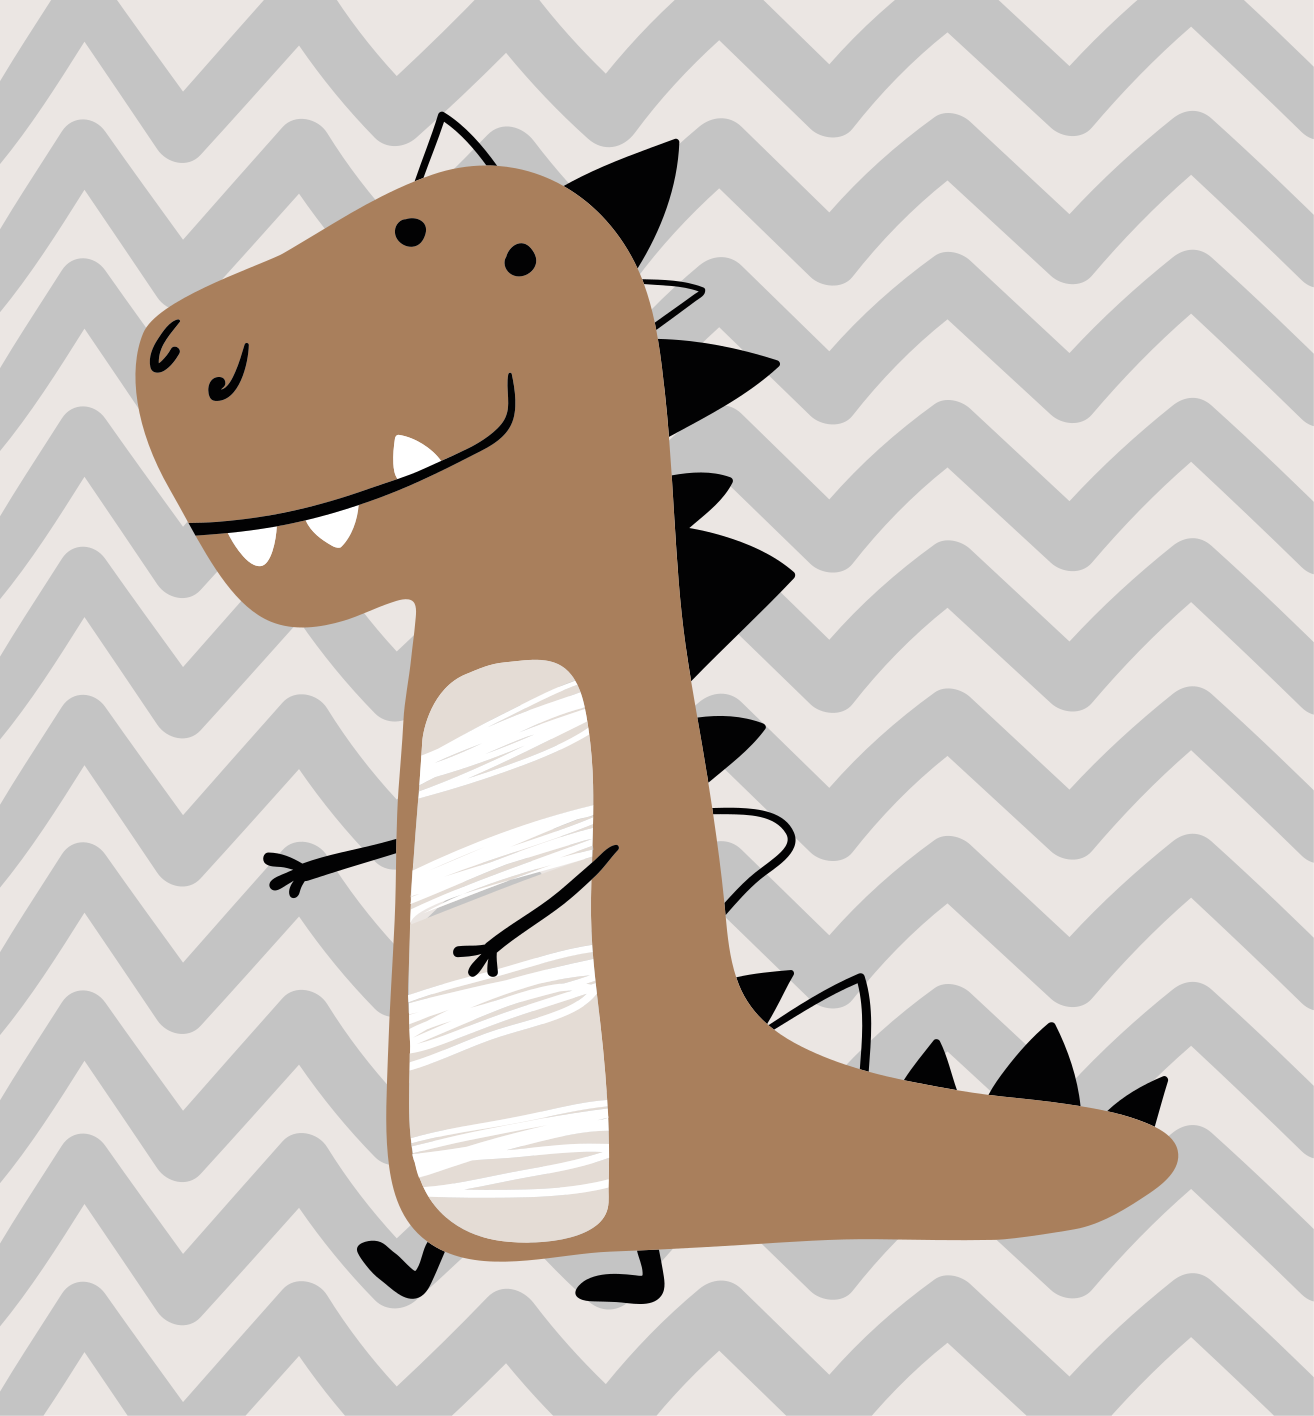 Um dinossauro roxo de desenho animado com dentes grandes